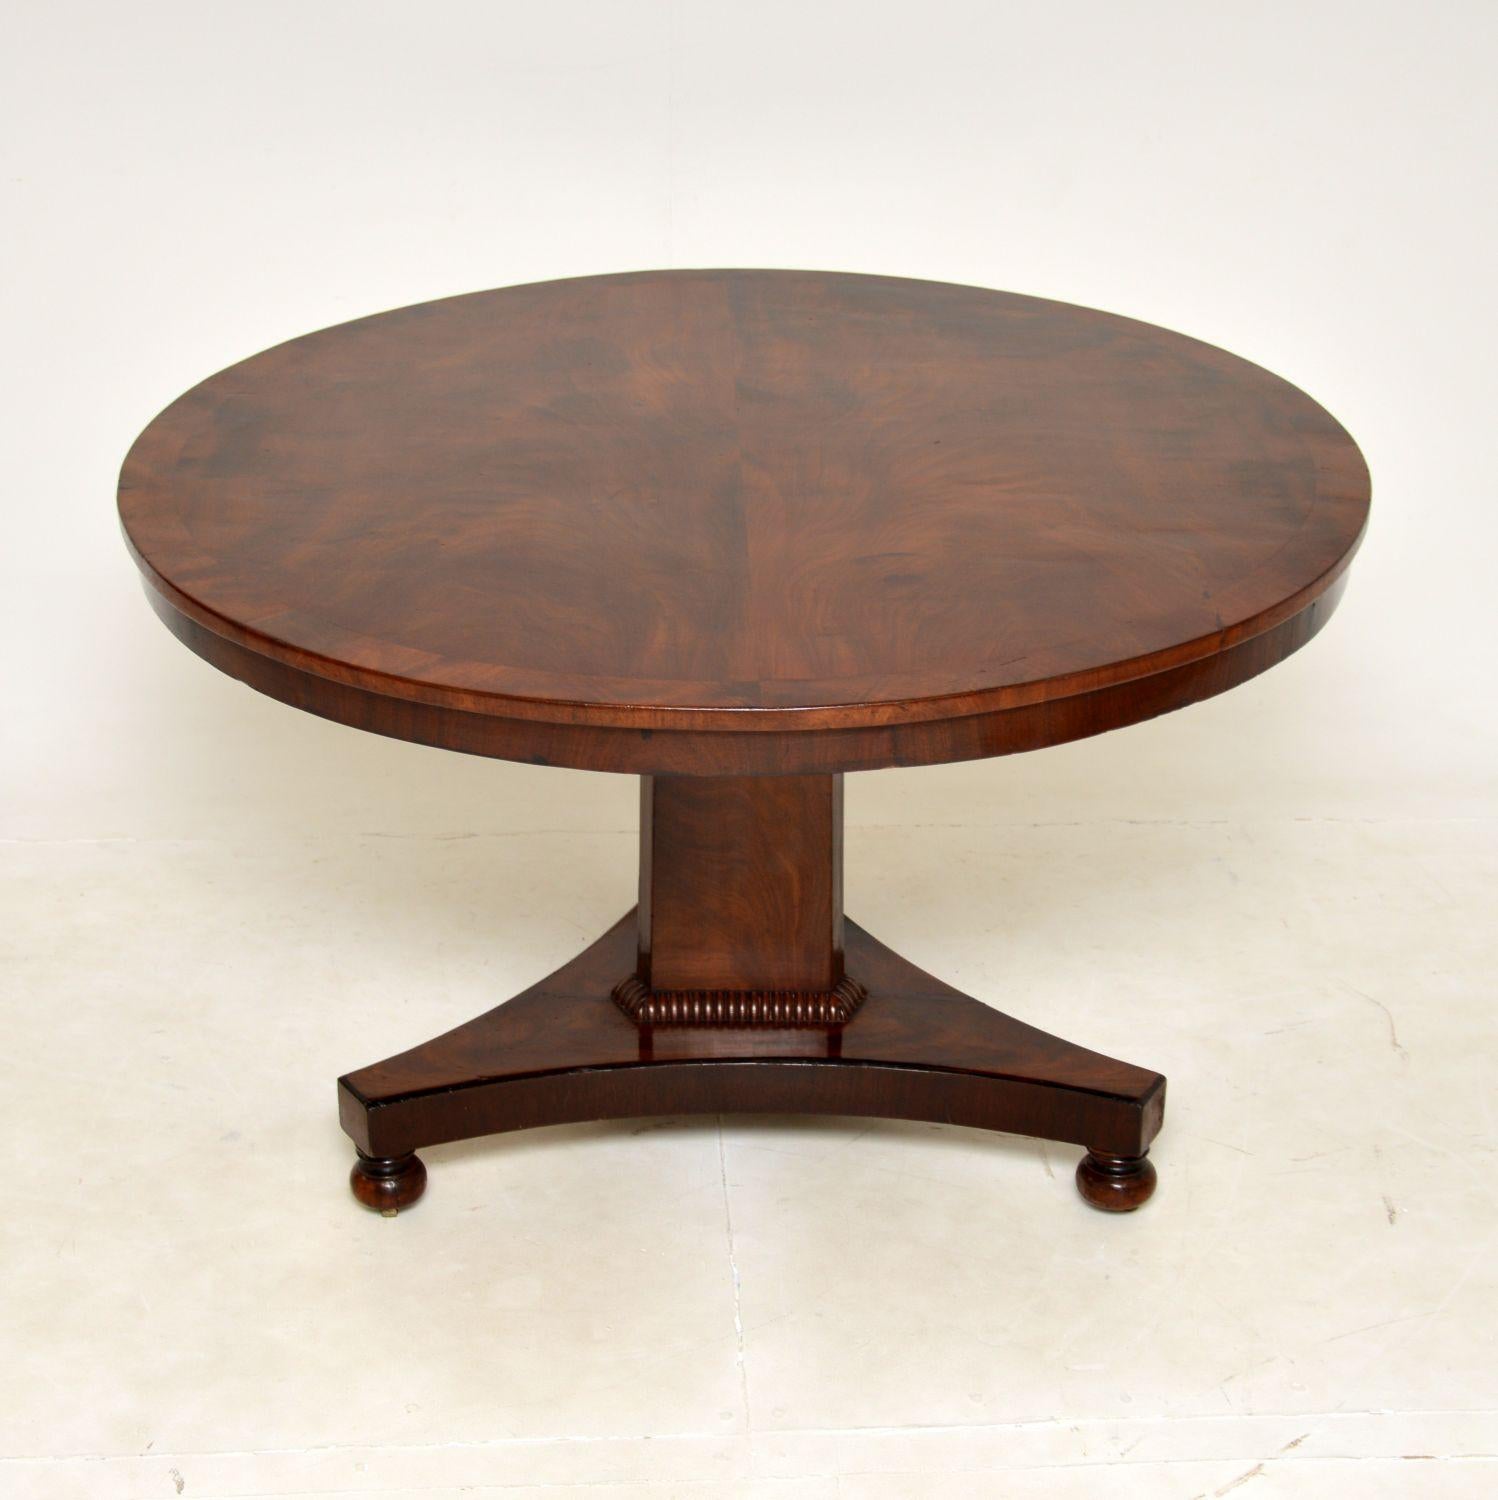 Une excellente table de salle à manger / centre de table d'époque William IV. Fabriqué en Angleterre, il date des années 1830-1840.

Il est de superbe qualité et d'une taille très utile. Elle peut être utilisée comme table de salle à manger/cuisine